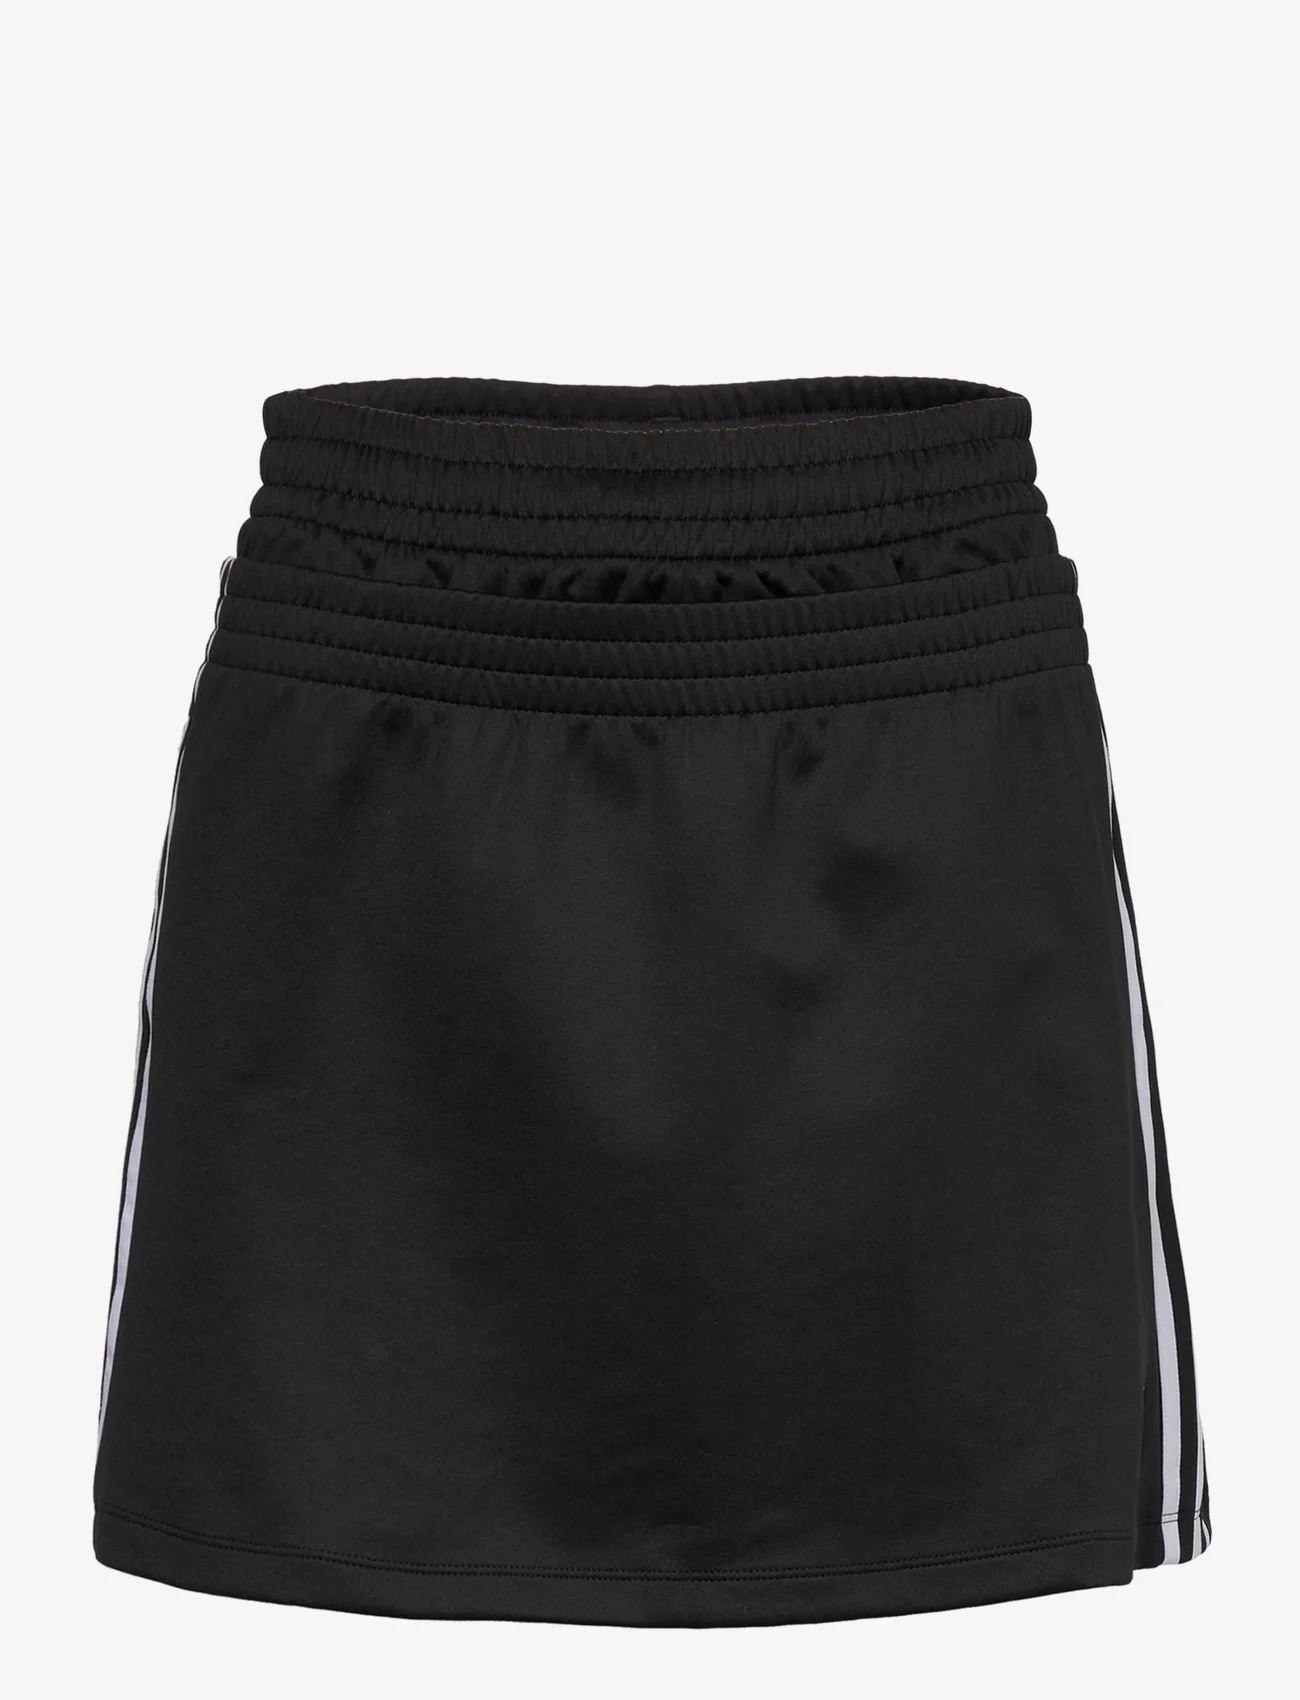 adidas Originals - Always Original Skirt - rokjes - black - 0